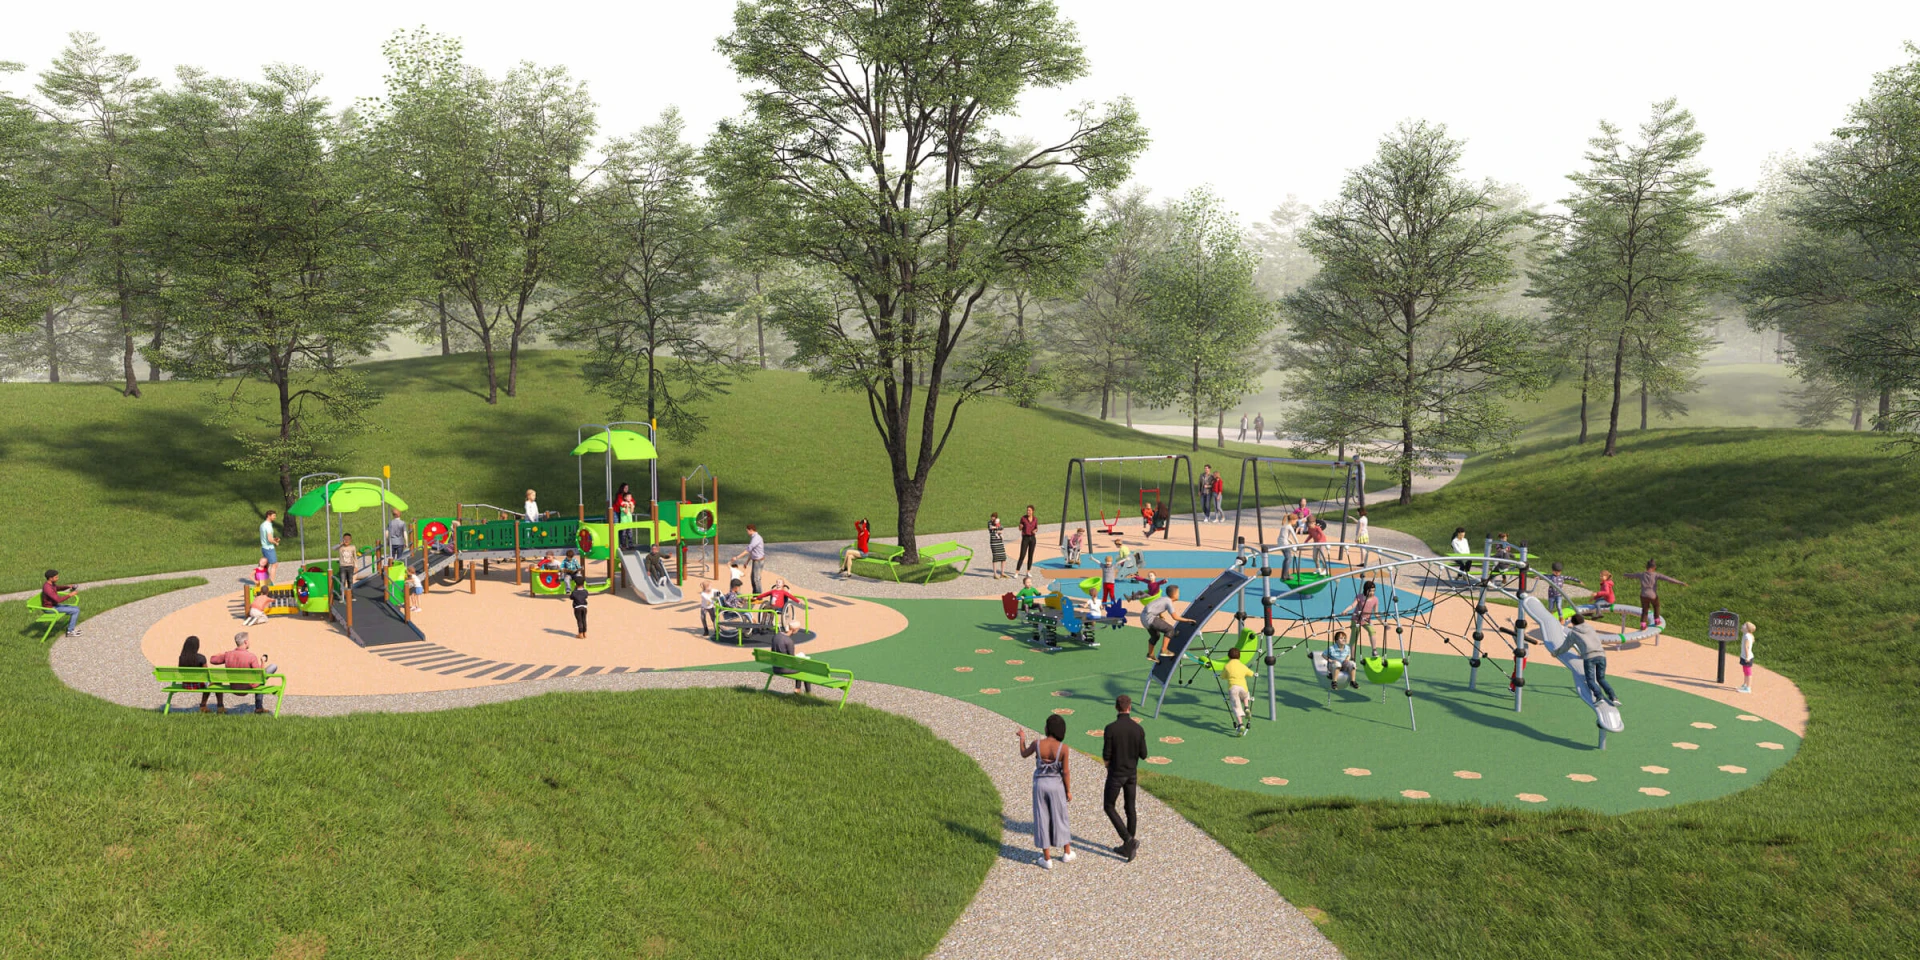 Design-Idee zum Bau eines inklusiven Spielplatzes in einem Park